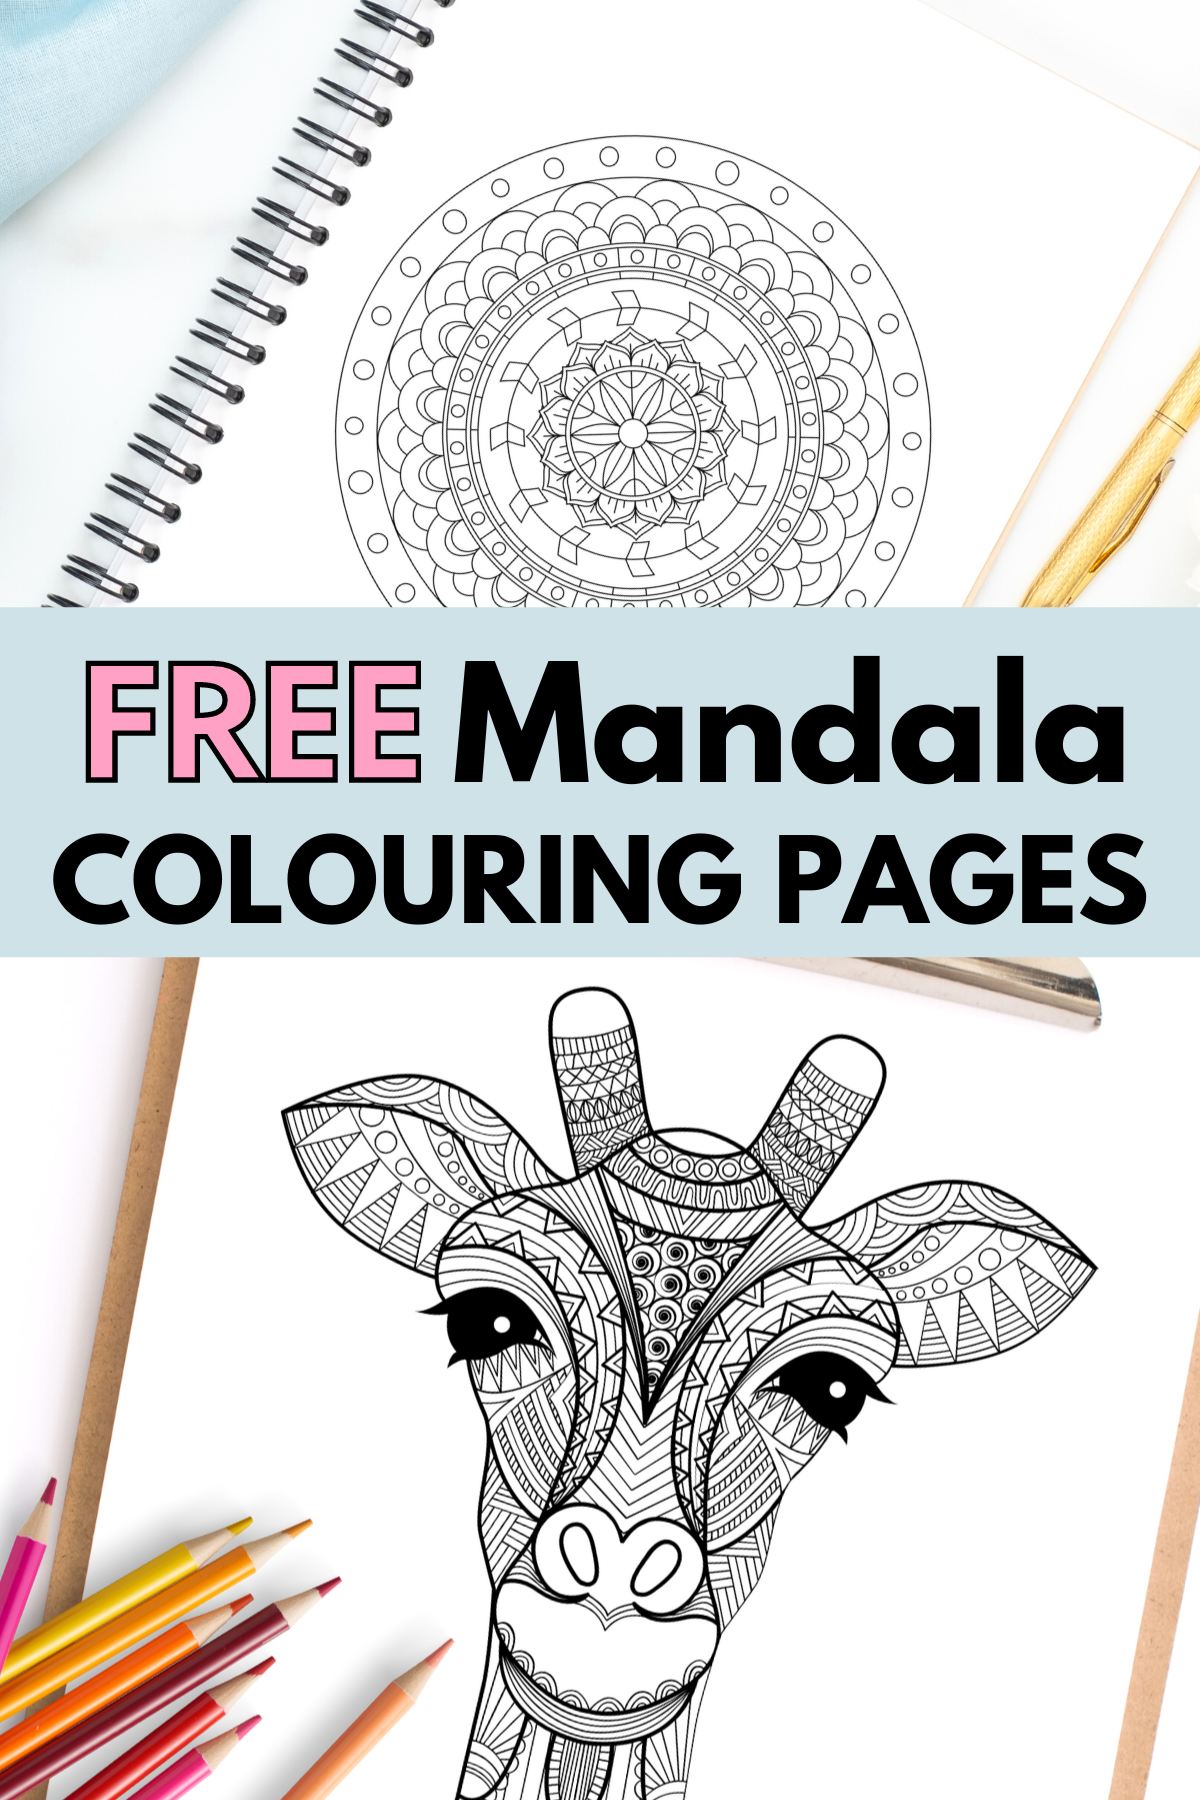 100 Mandalas to Color: Adult Coloring Book: Mandalas Coloring Book for  Adults Beautiful Mandalas Coloring Book Relaxing Mandalas Designs  (Paperback)